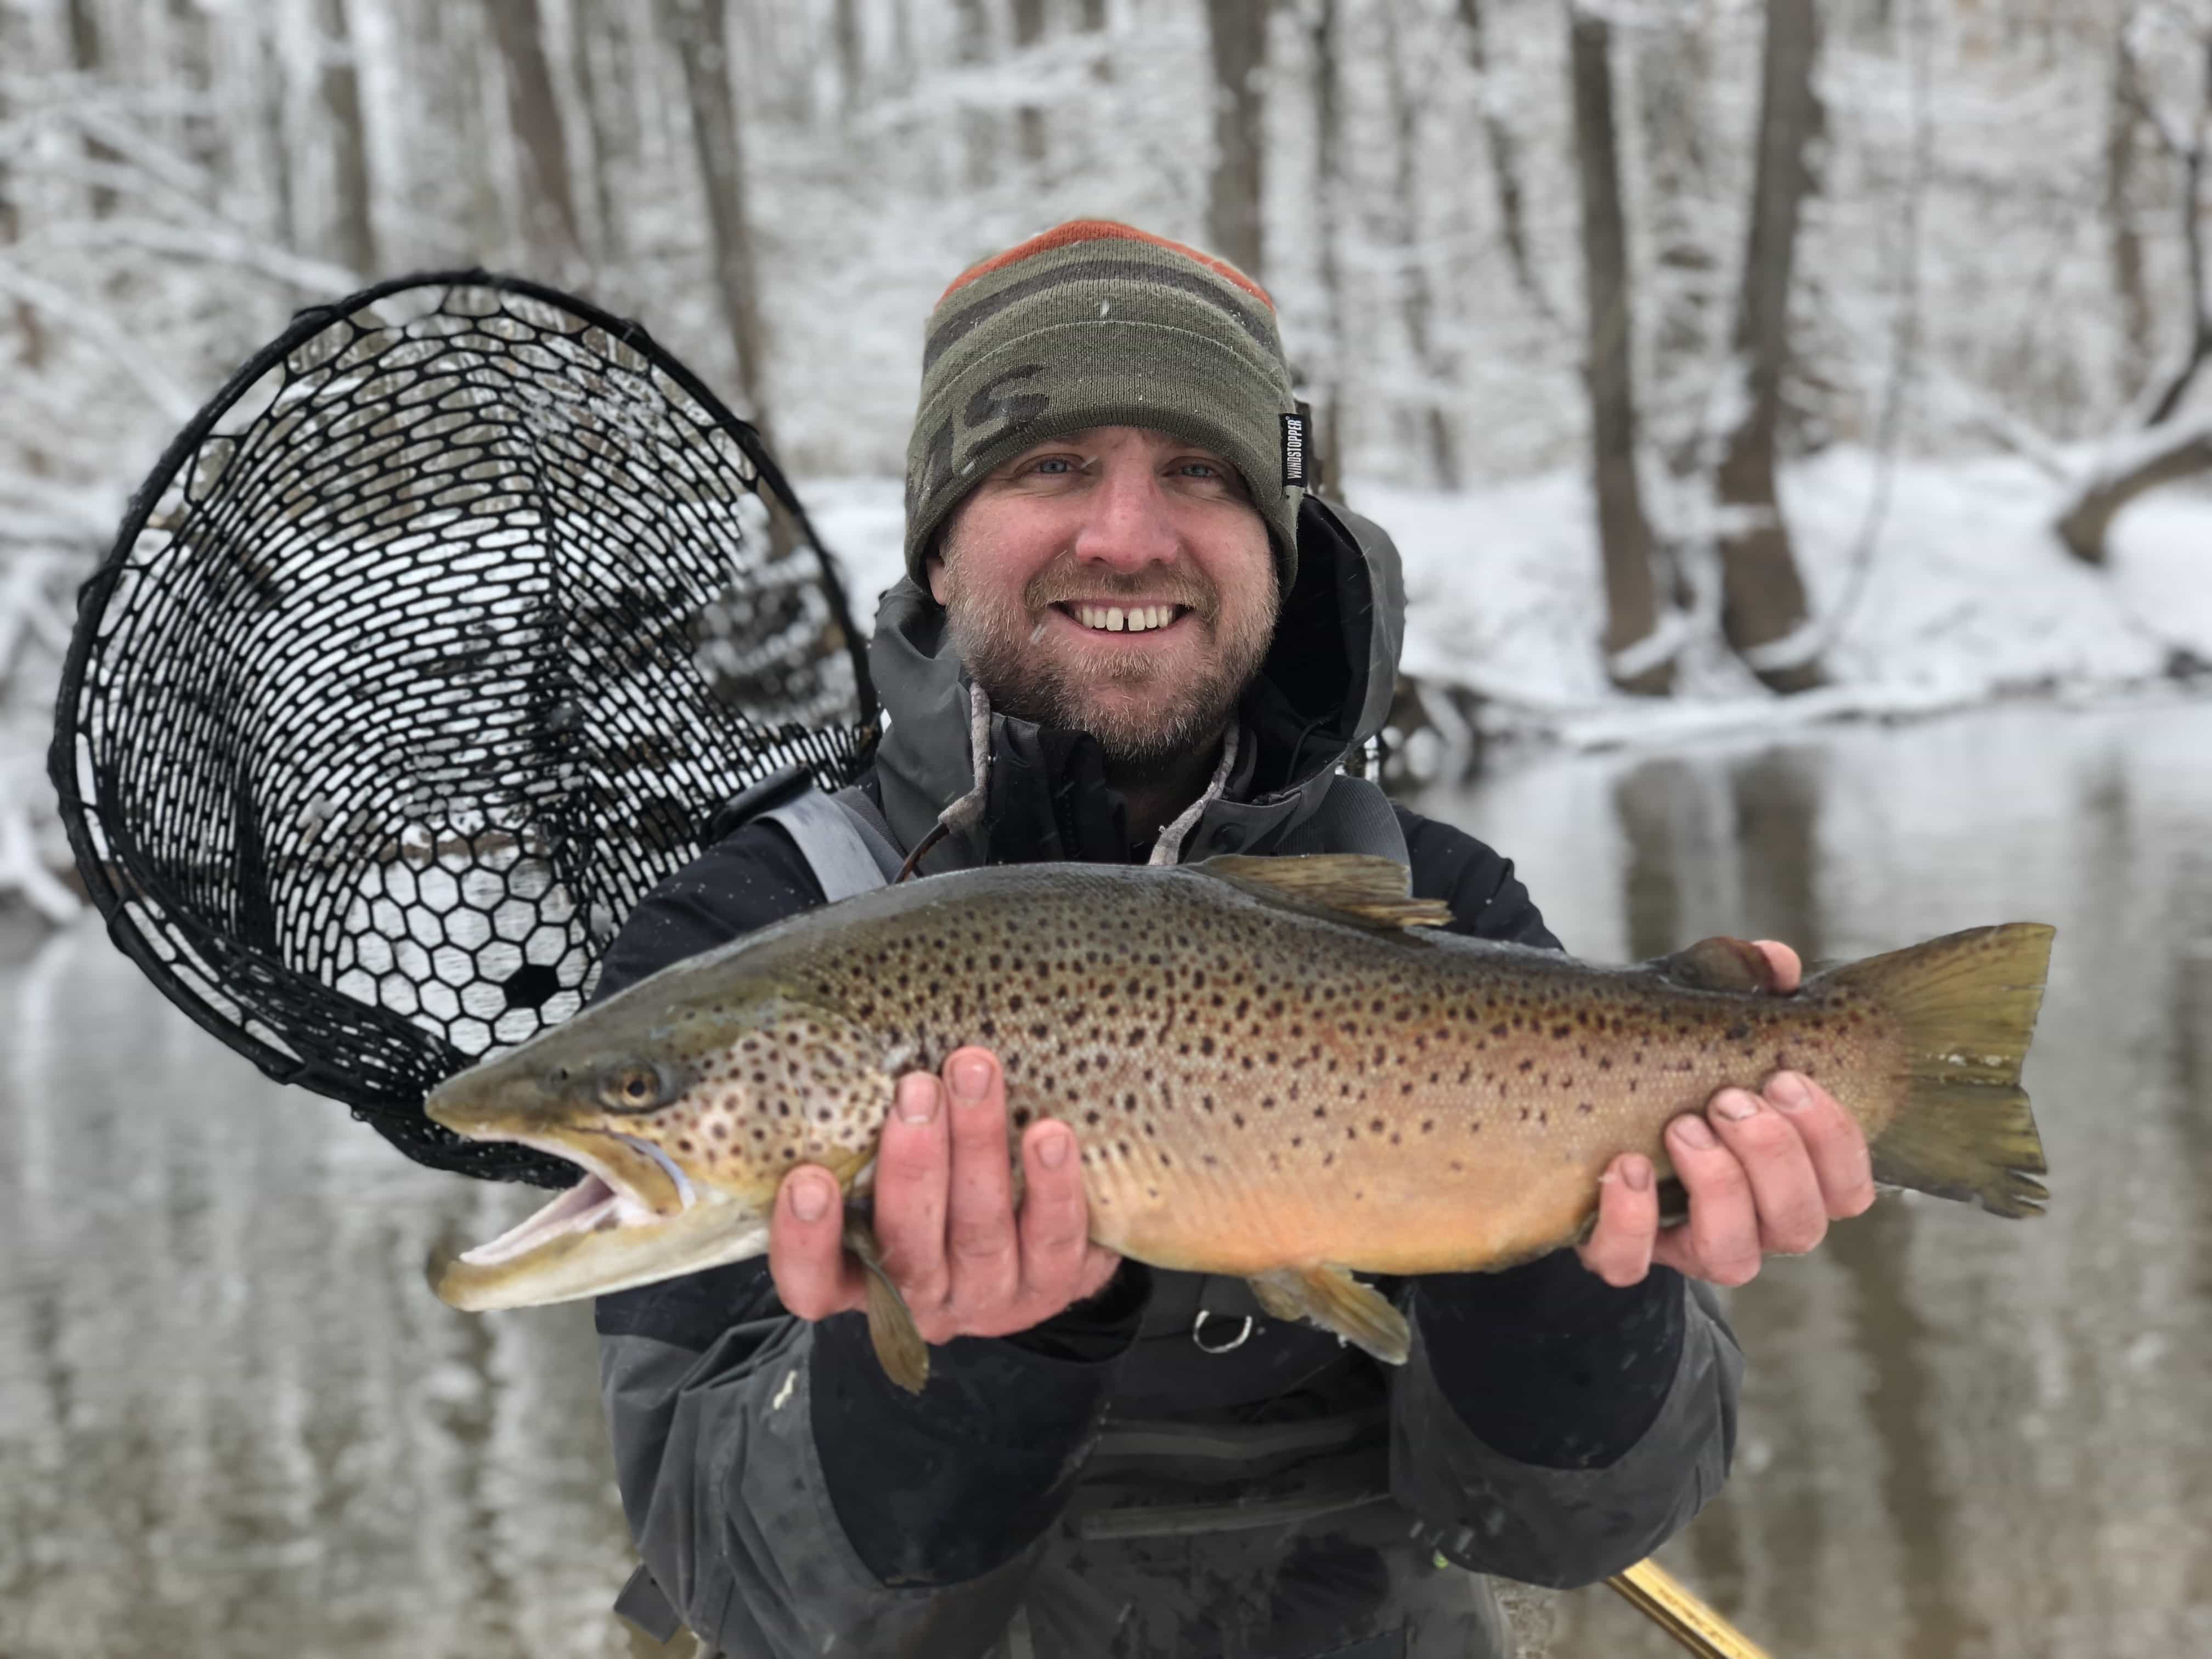 20180314 161709569 iOS - Winter Charter Fishing in Buffalo Niagara